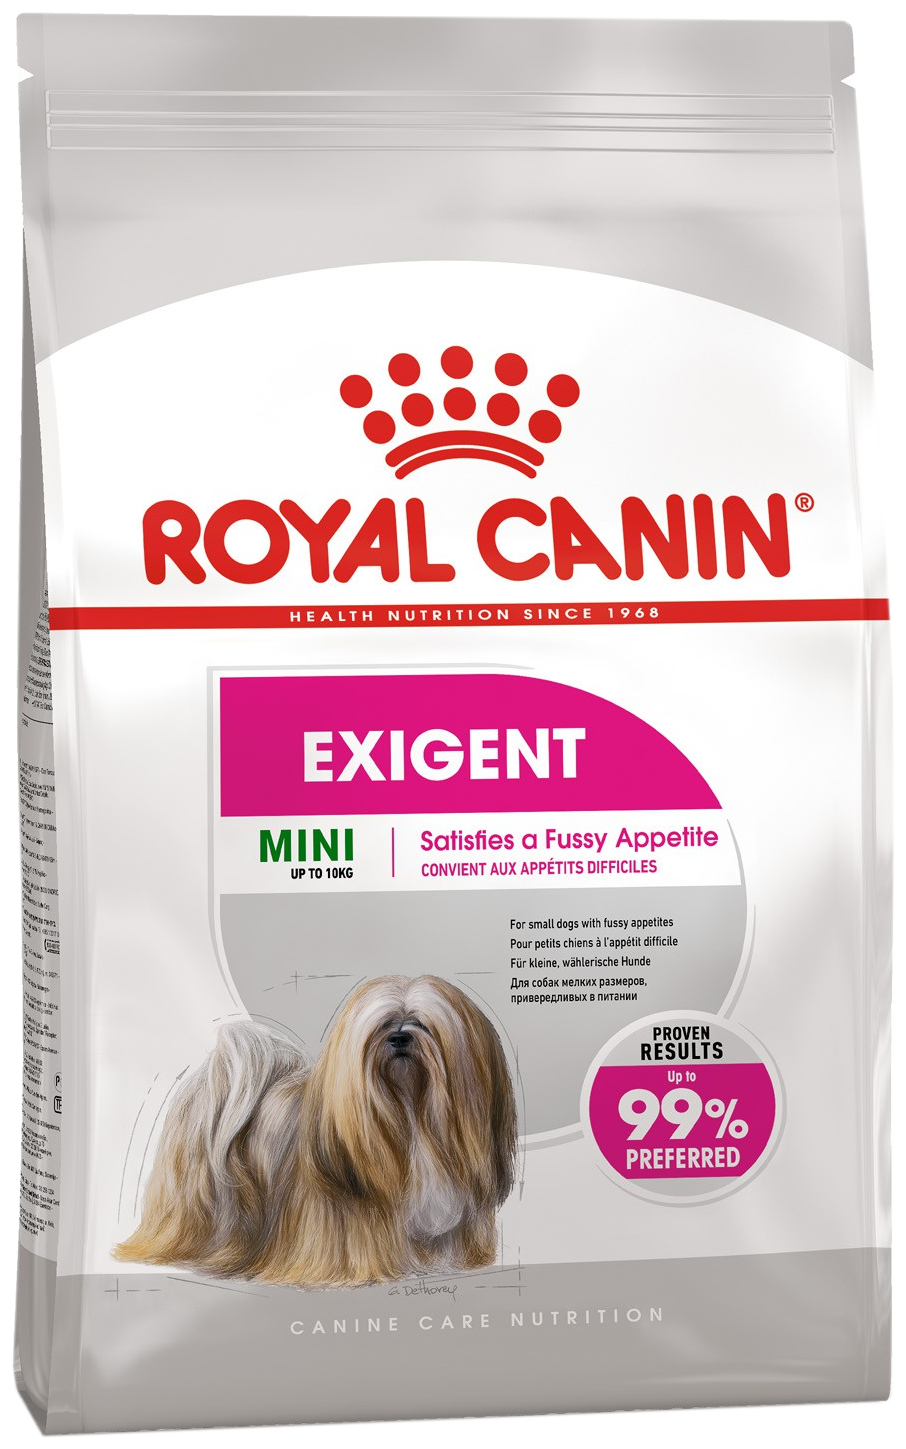 Royal Canin для взрослых собак мелких размеров (весом от 1 до 10 кг), привередливых в питании, от 10 месяцев до 12 лет 1кг.